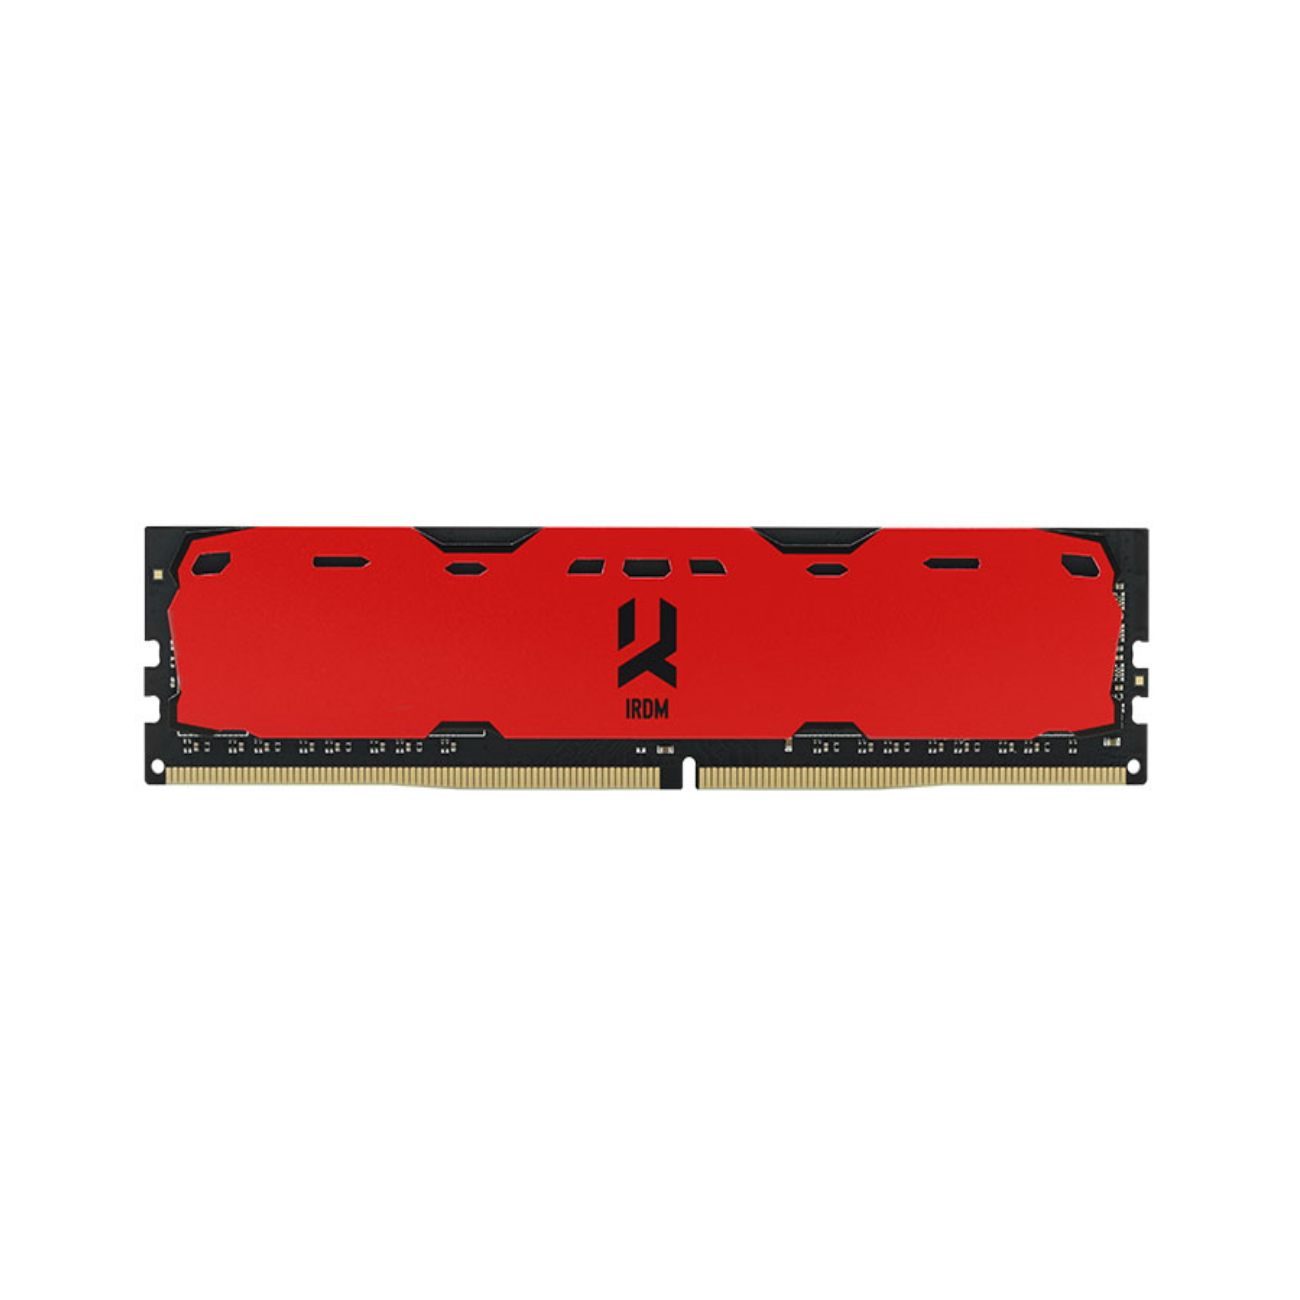 RED DDR4 CL15 GOODRAM 2400MHz GB 4 IRDM Arbeitsspeicher 4GB DIMM SR